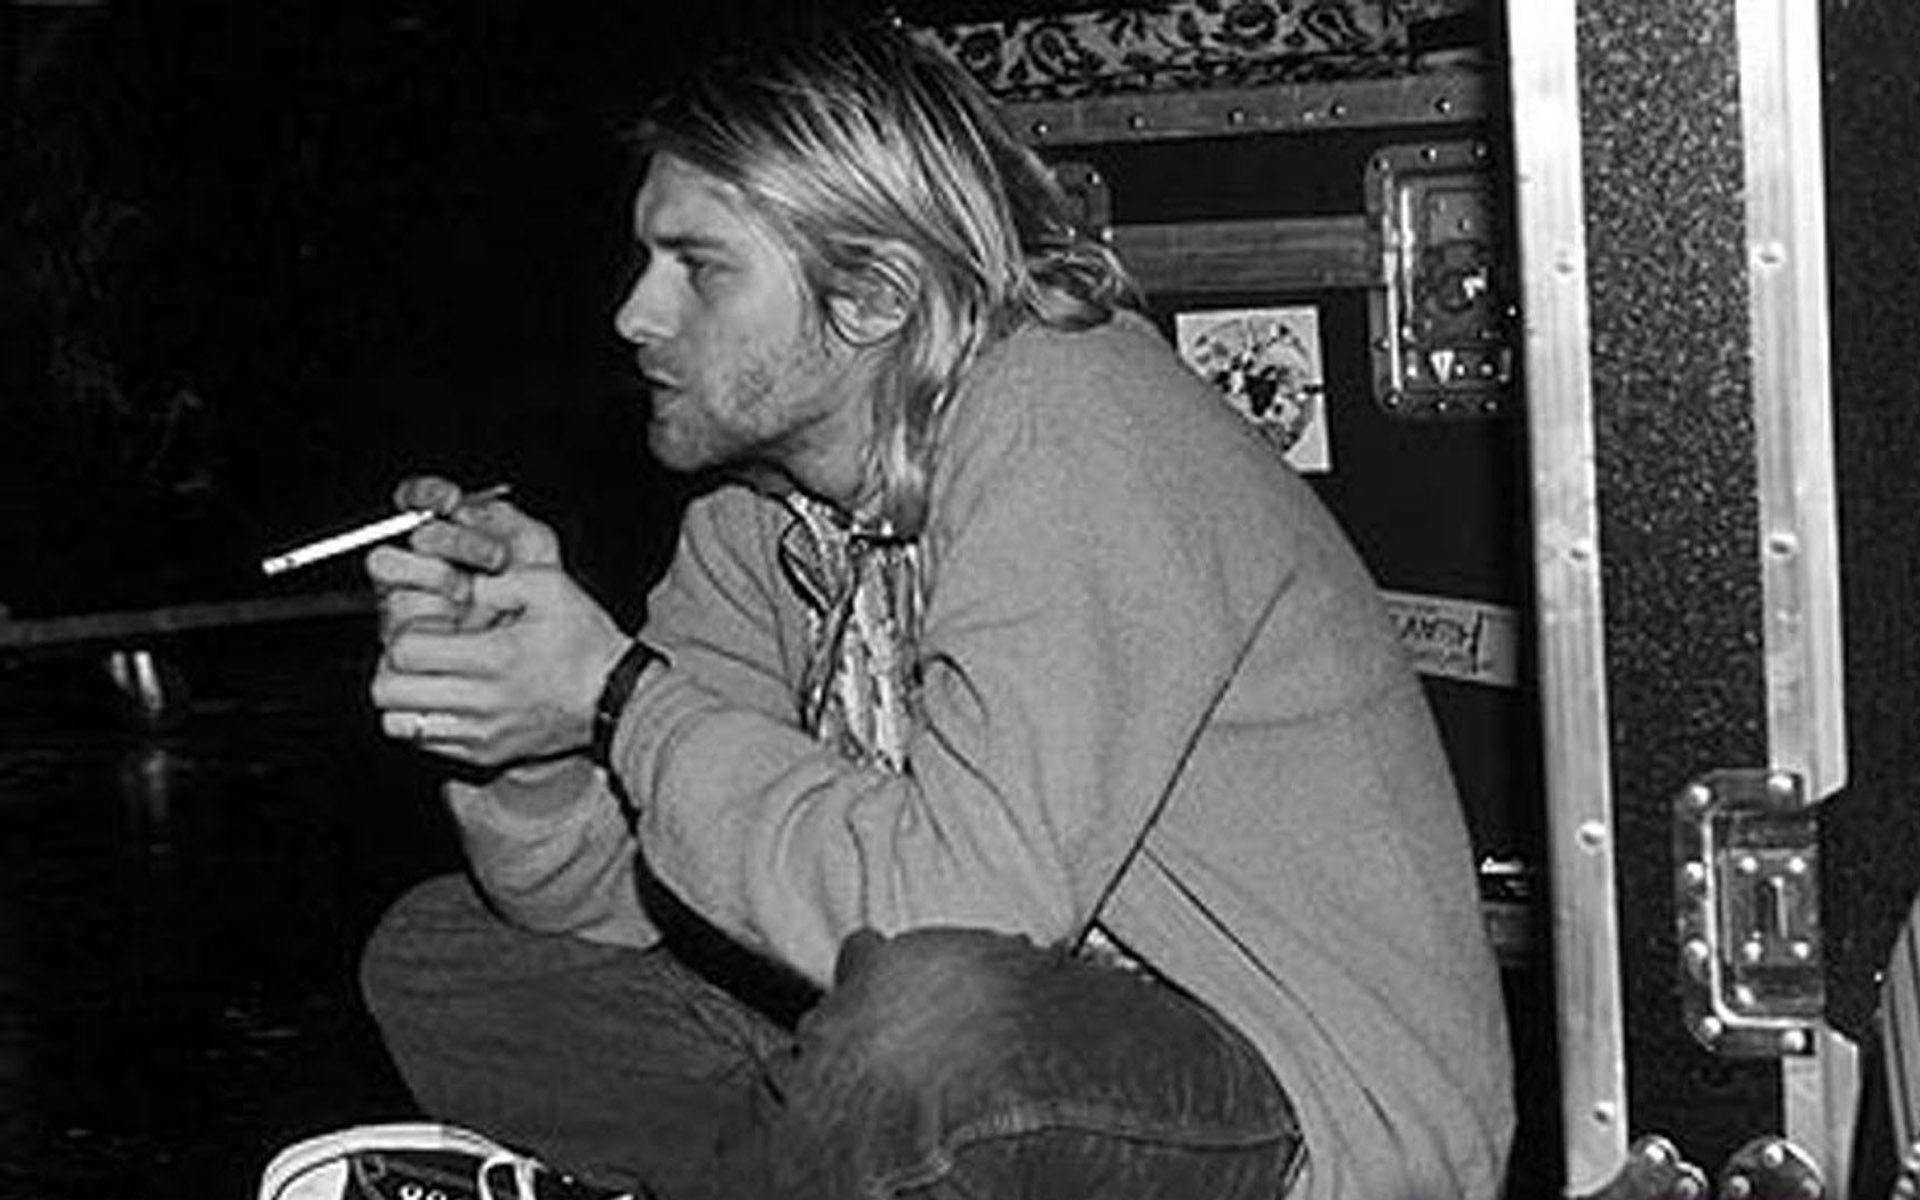 Kurt Cobain Smoking Wallpapers Wallpaper Cave